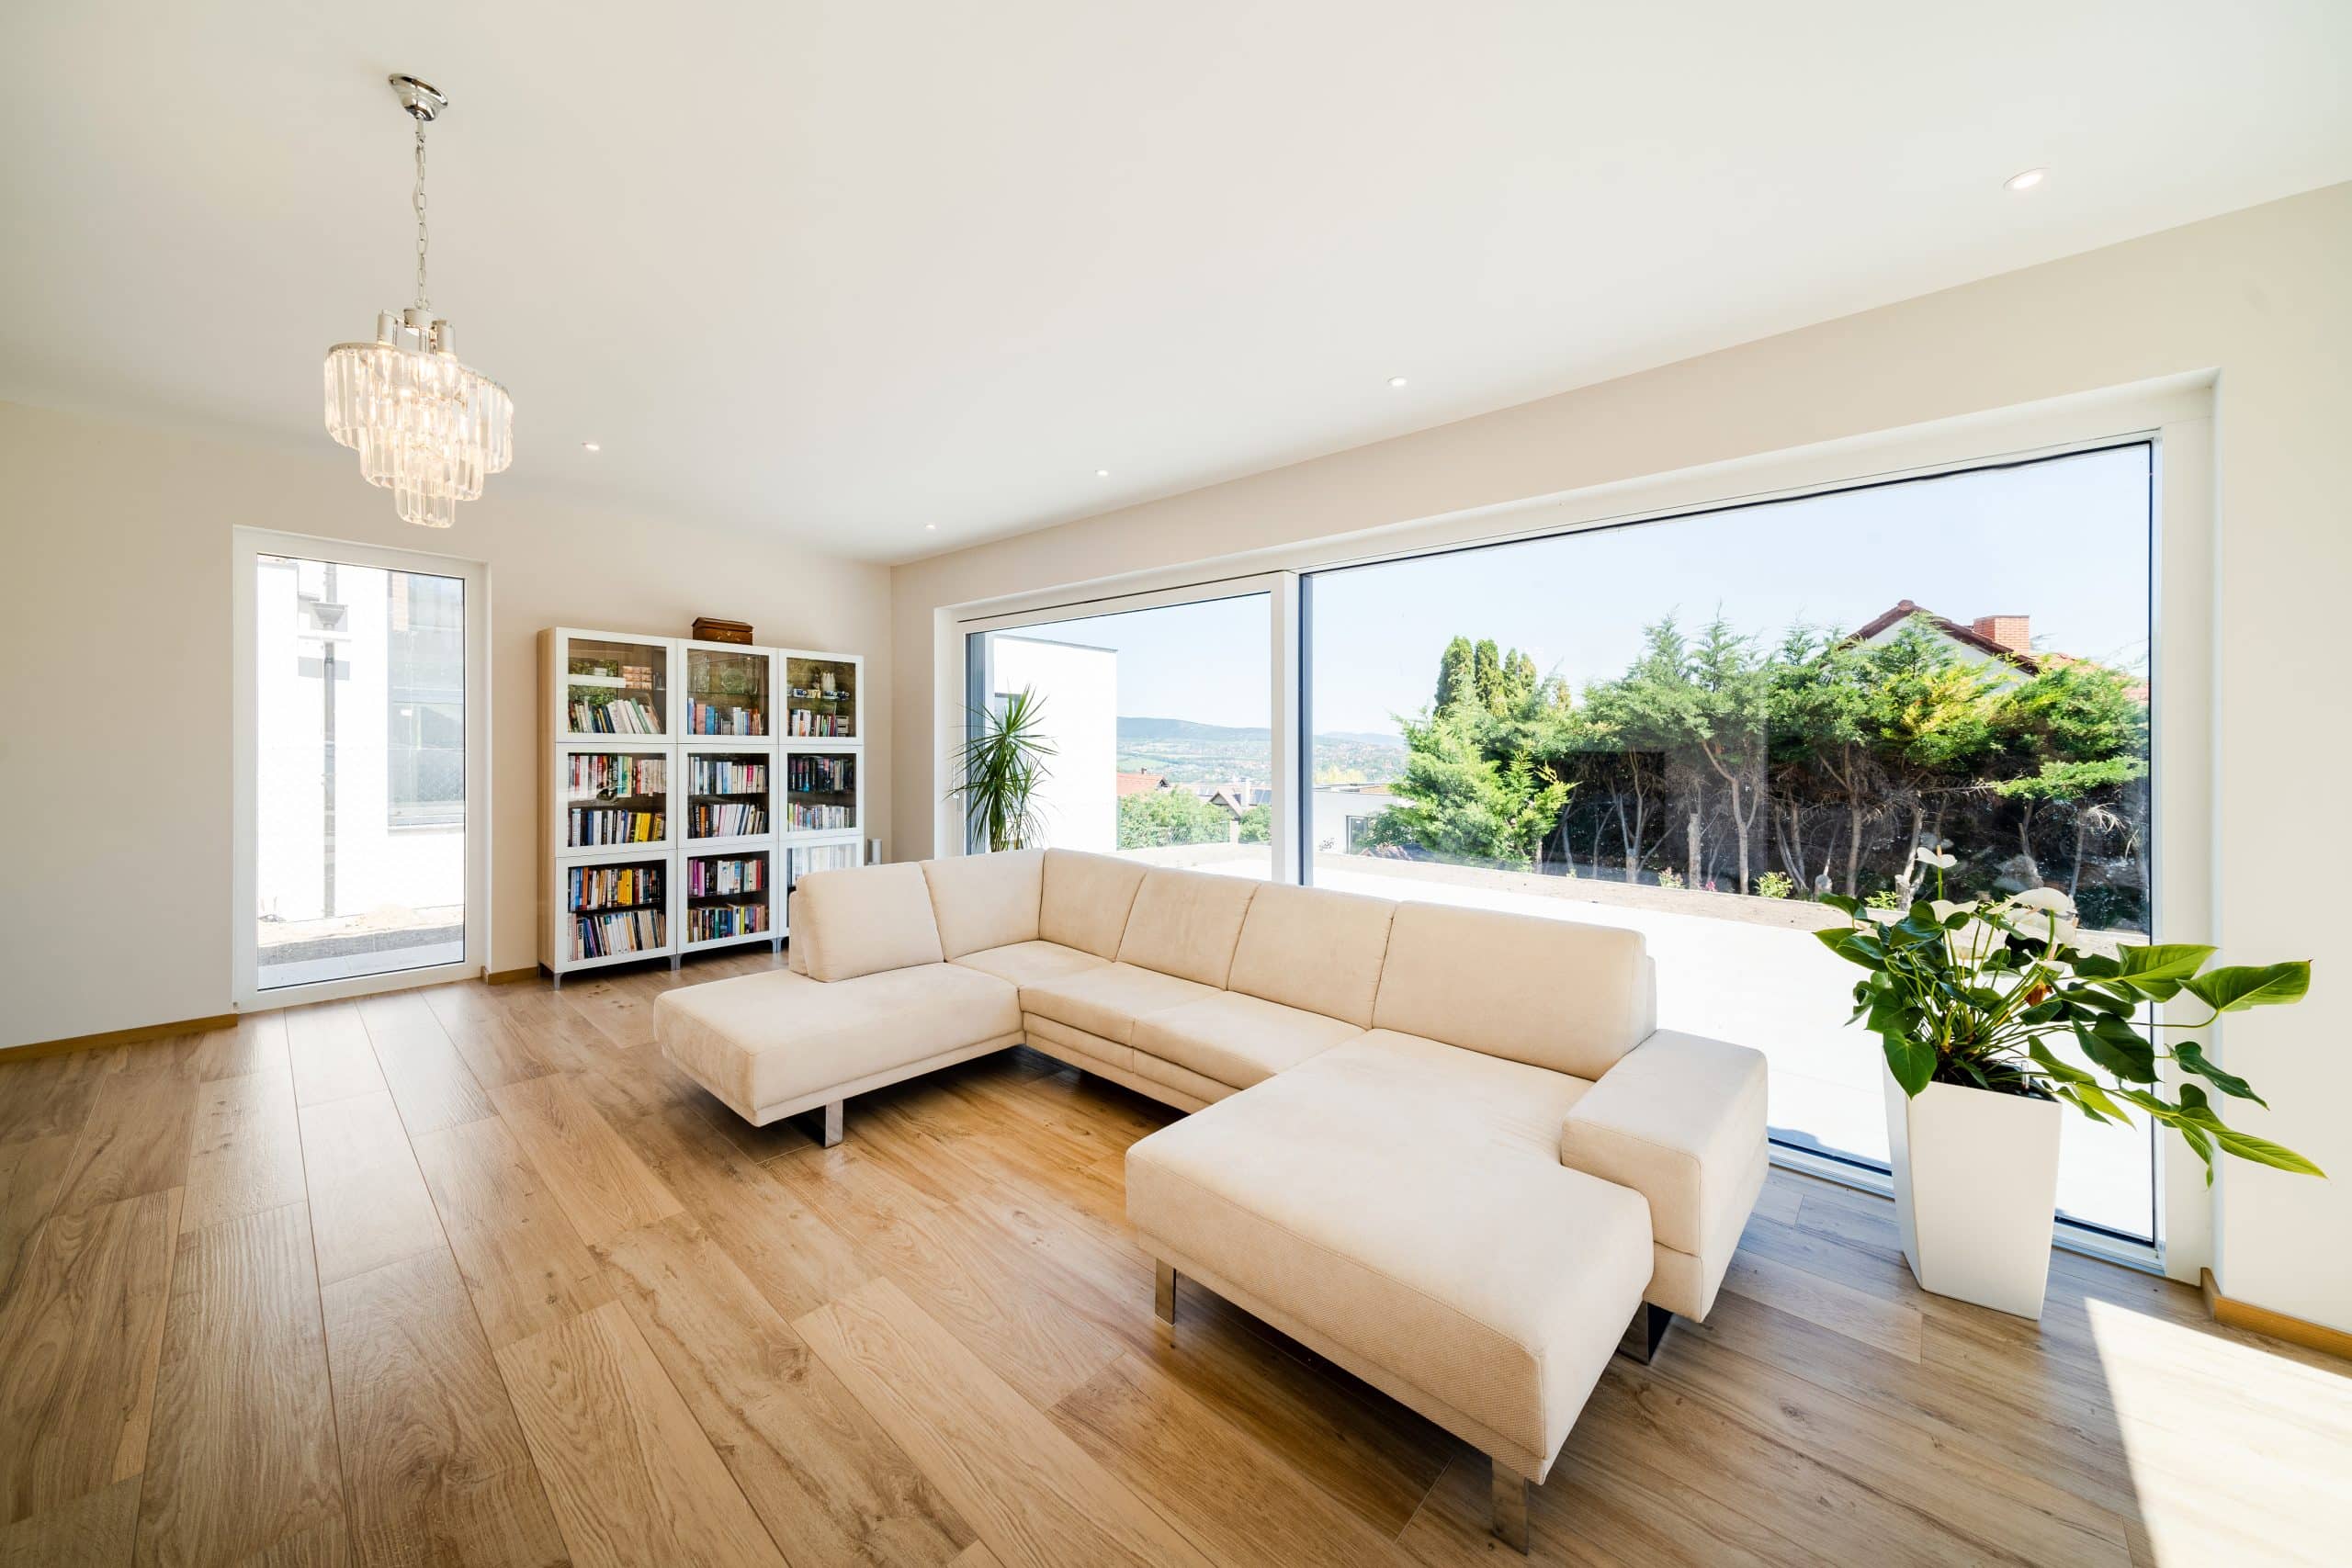 Internorm zeigt eine vollverglaste Wand eines Wohnzimmers in dem eine beige Couch und ein Bücherregal stehen.